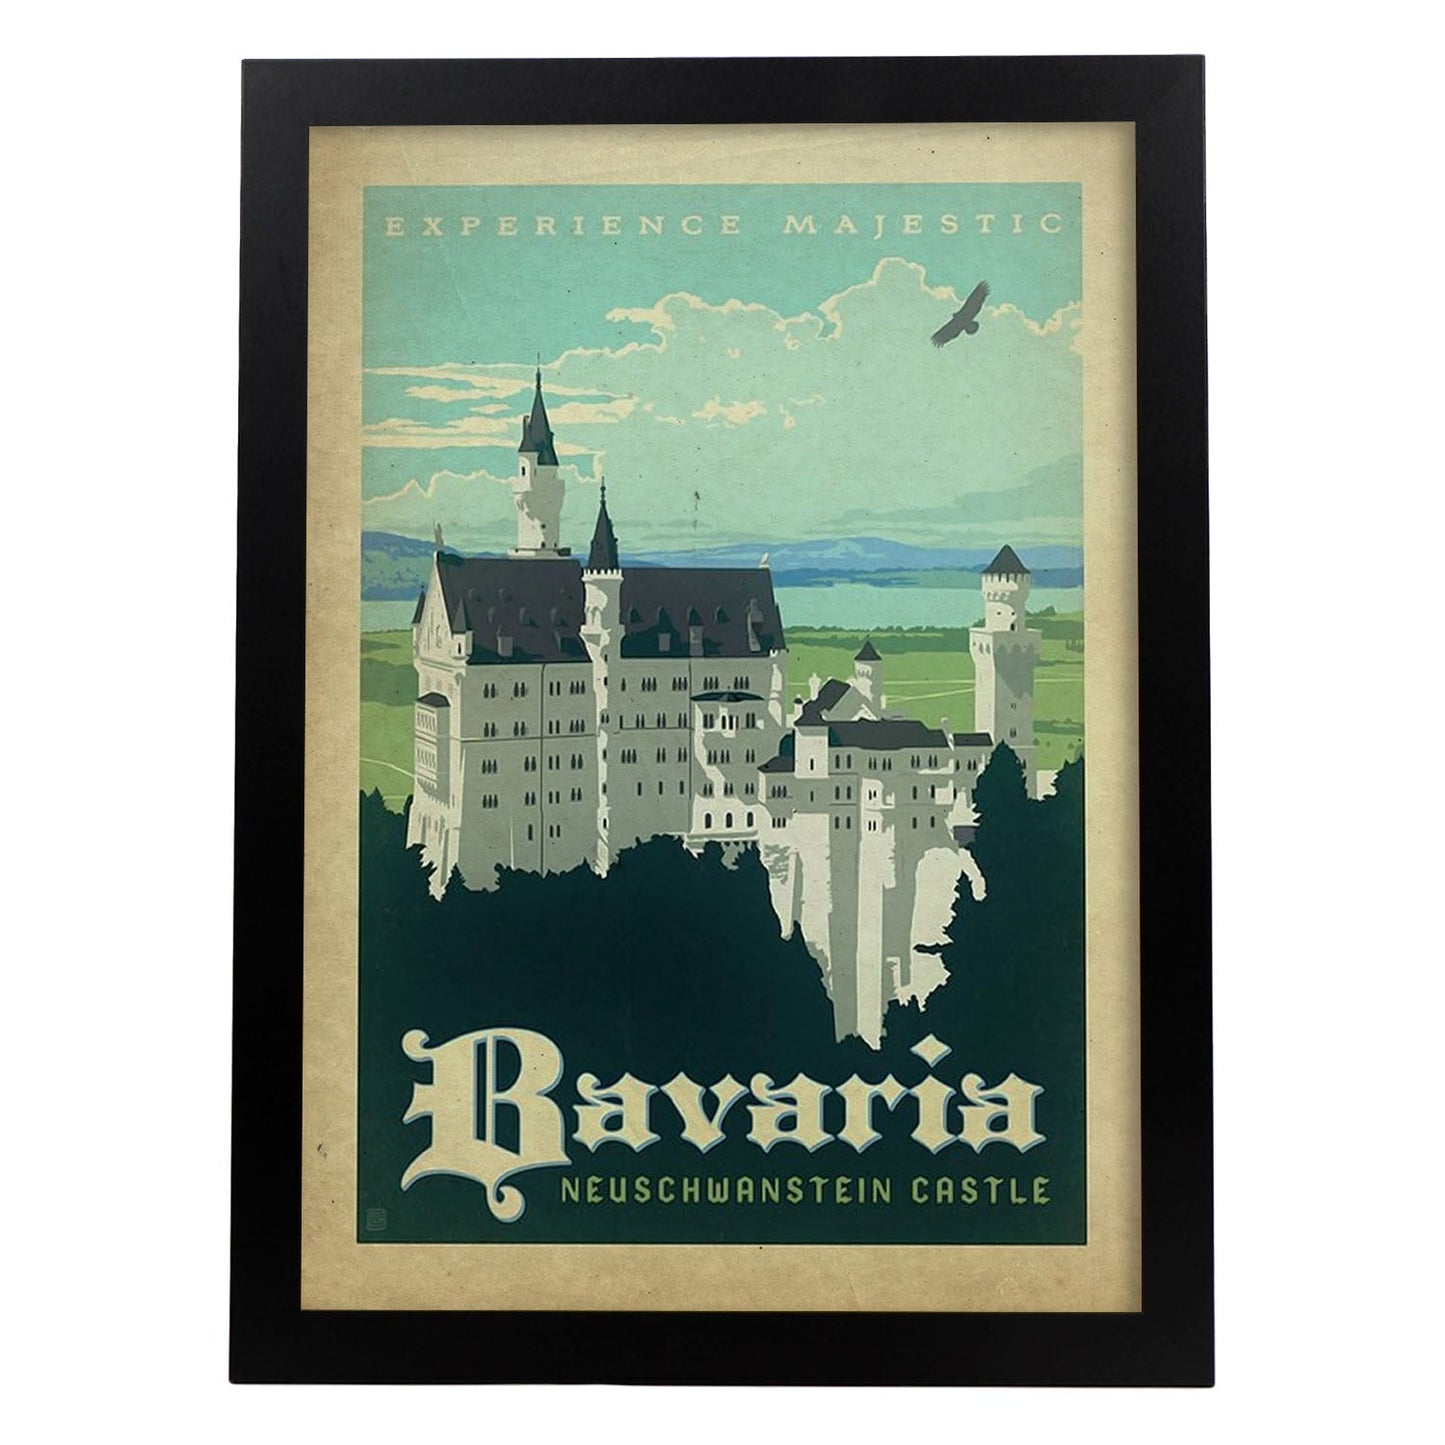 Poster vintage de Bavaria. con imágenes vintage y de publicidad antigua.-Artwork-Nacnic-A3-Marco Negro-Nacnic Estudio SL